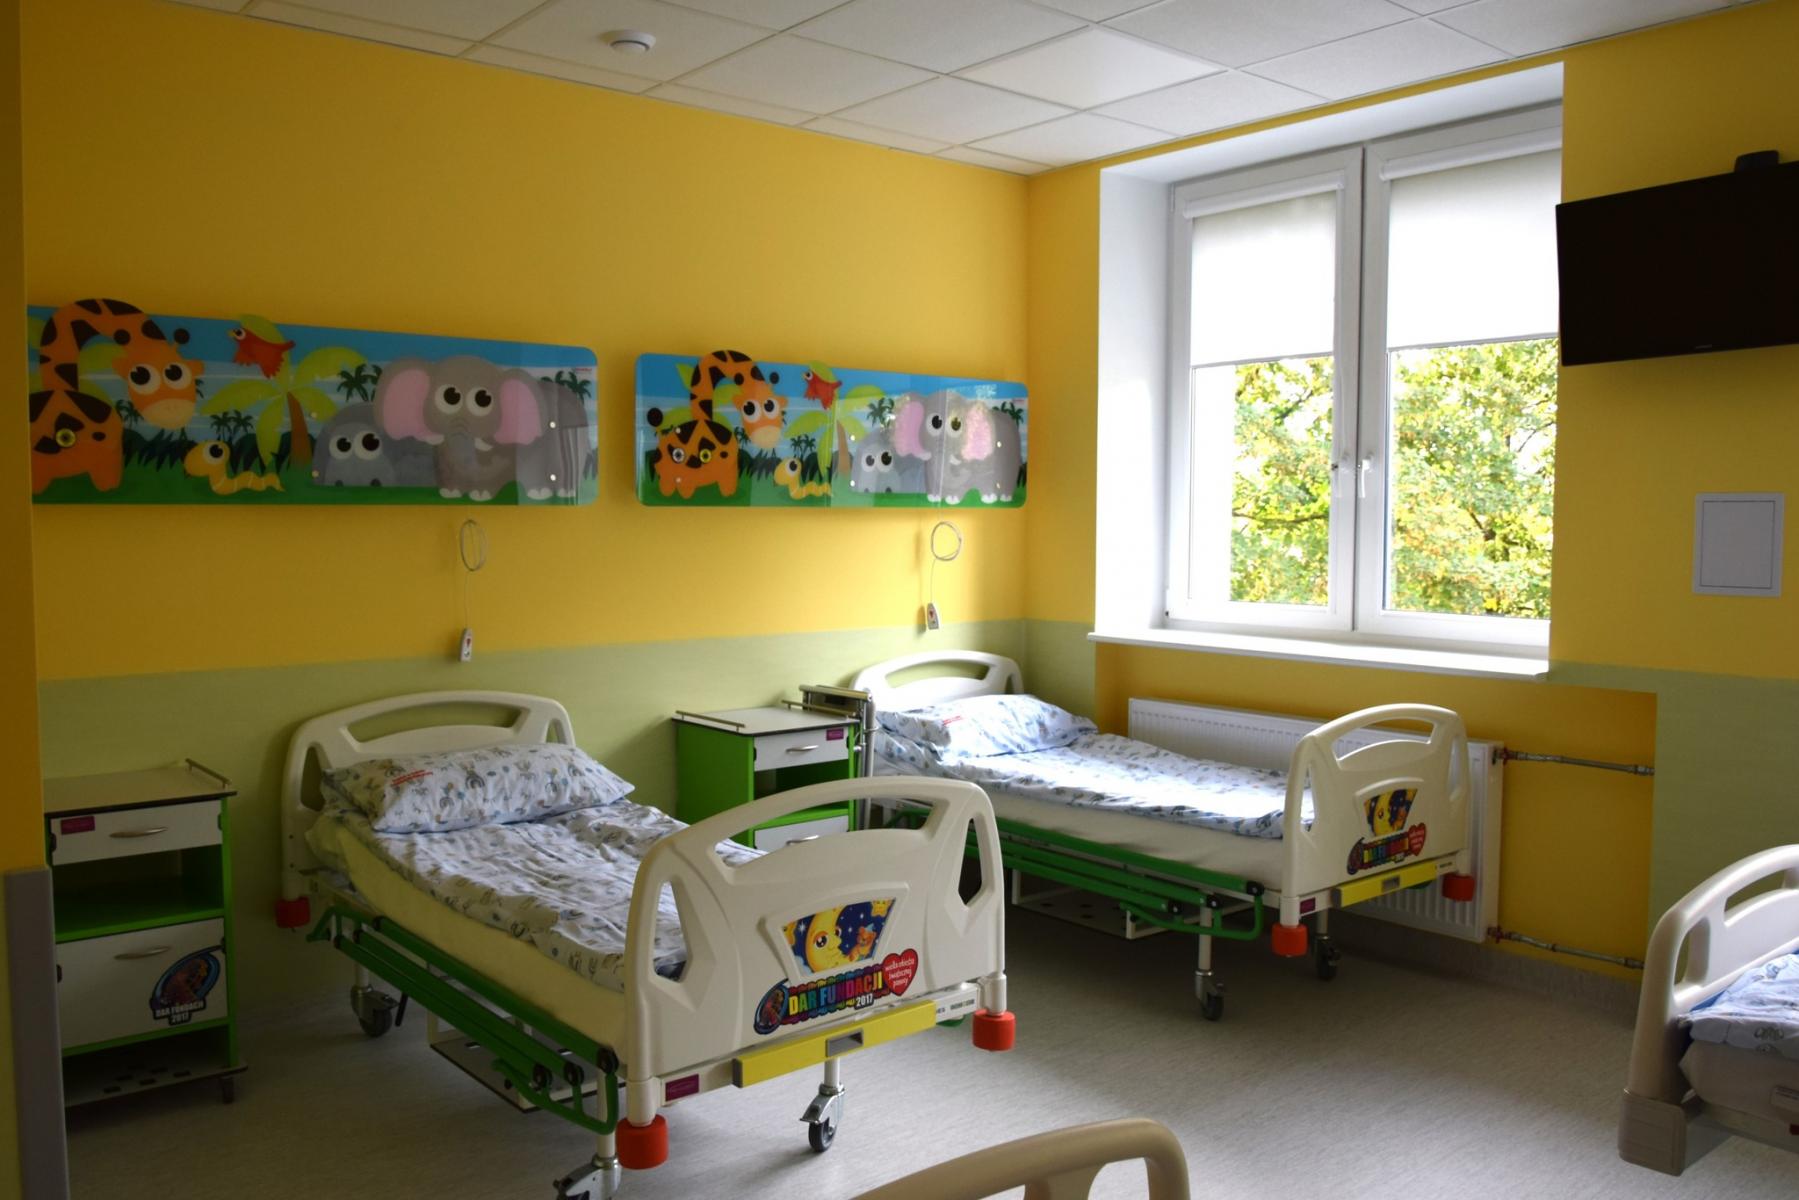 Żółto- zielona sala z kolorowymi obrazkami. Łóżka szpitalne i szafki obok